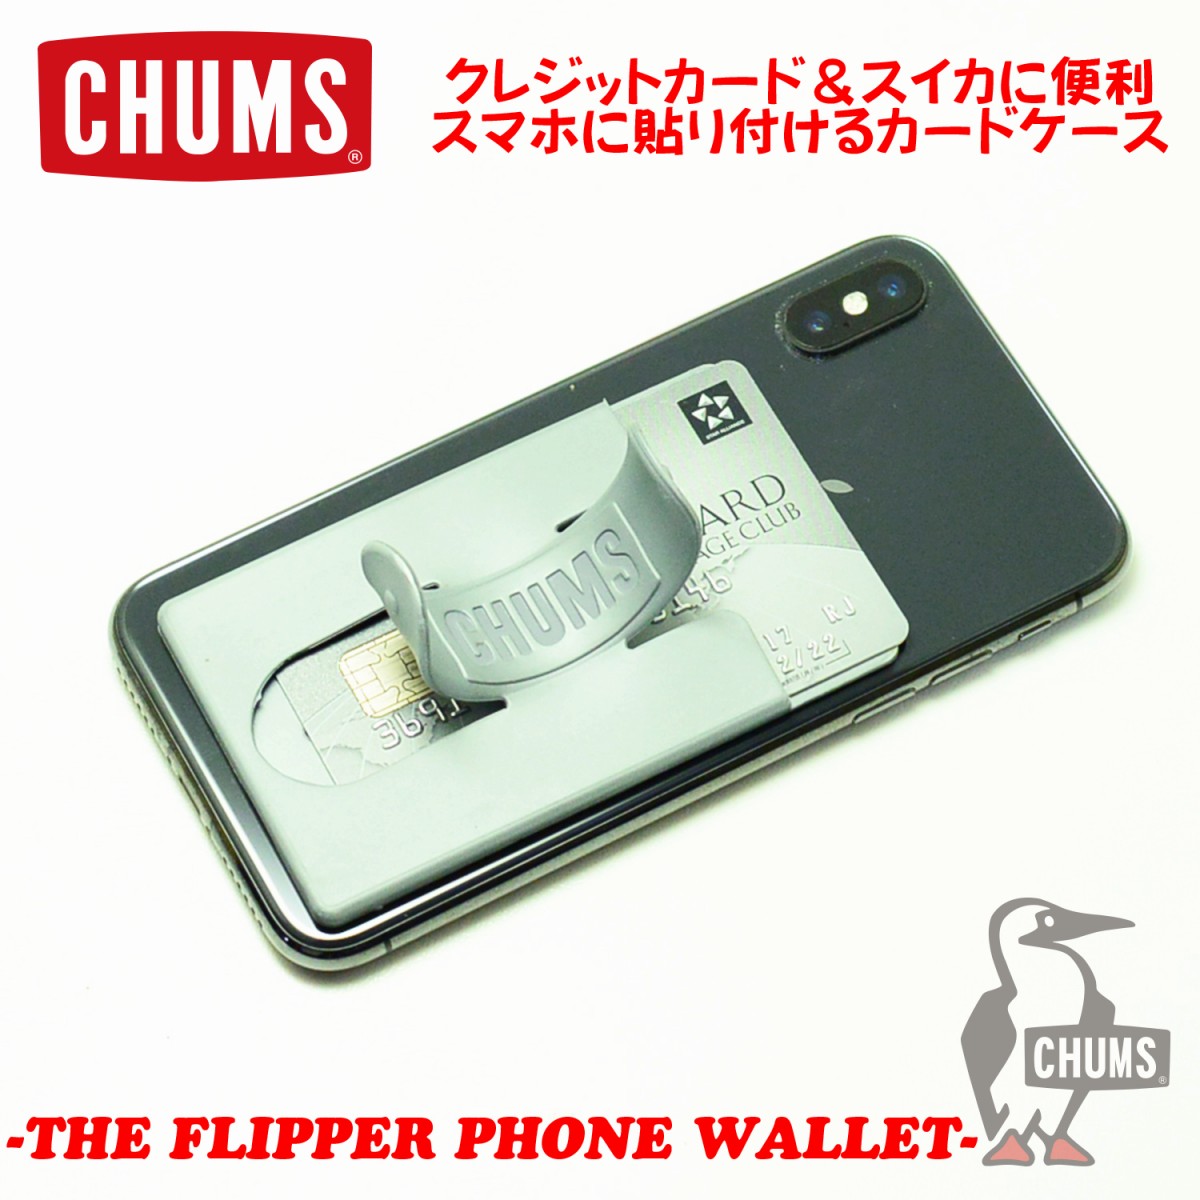 CHUMS チャムスTHE FLIPPER PHONE WALLETフリッパーフォーンウォレットスマホ フリッパー 落下防止 ストラップ  ホルダー ID カード スマートフォン iPhone デコリンメガネ